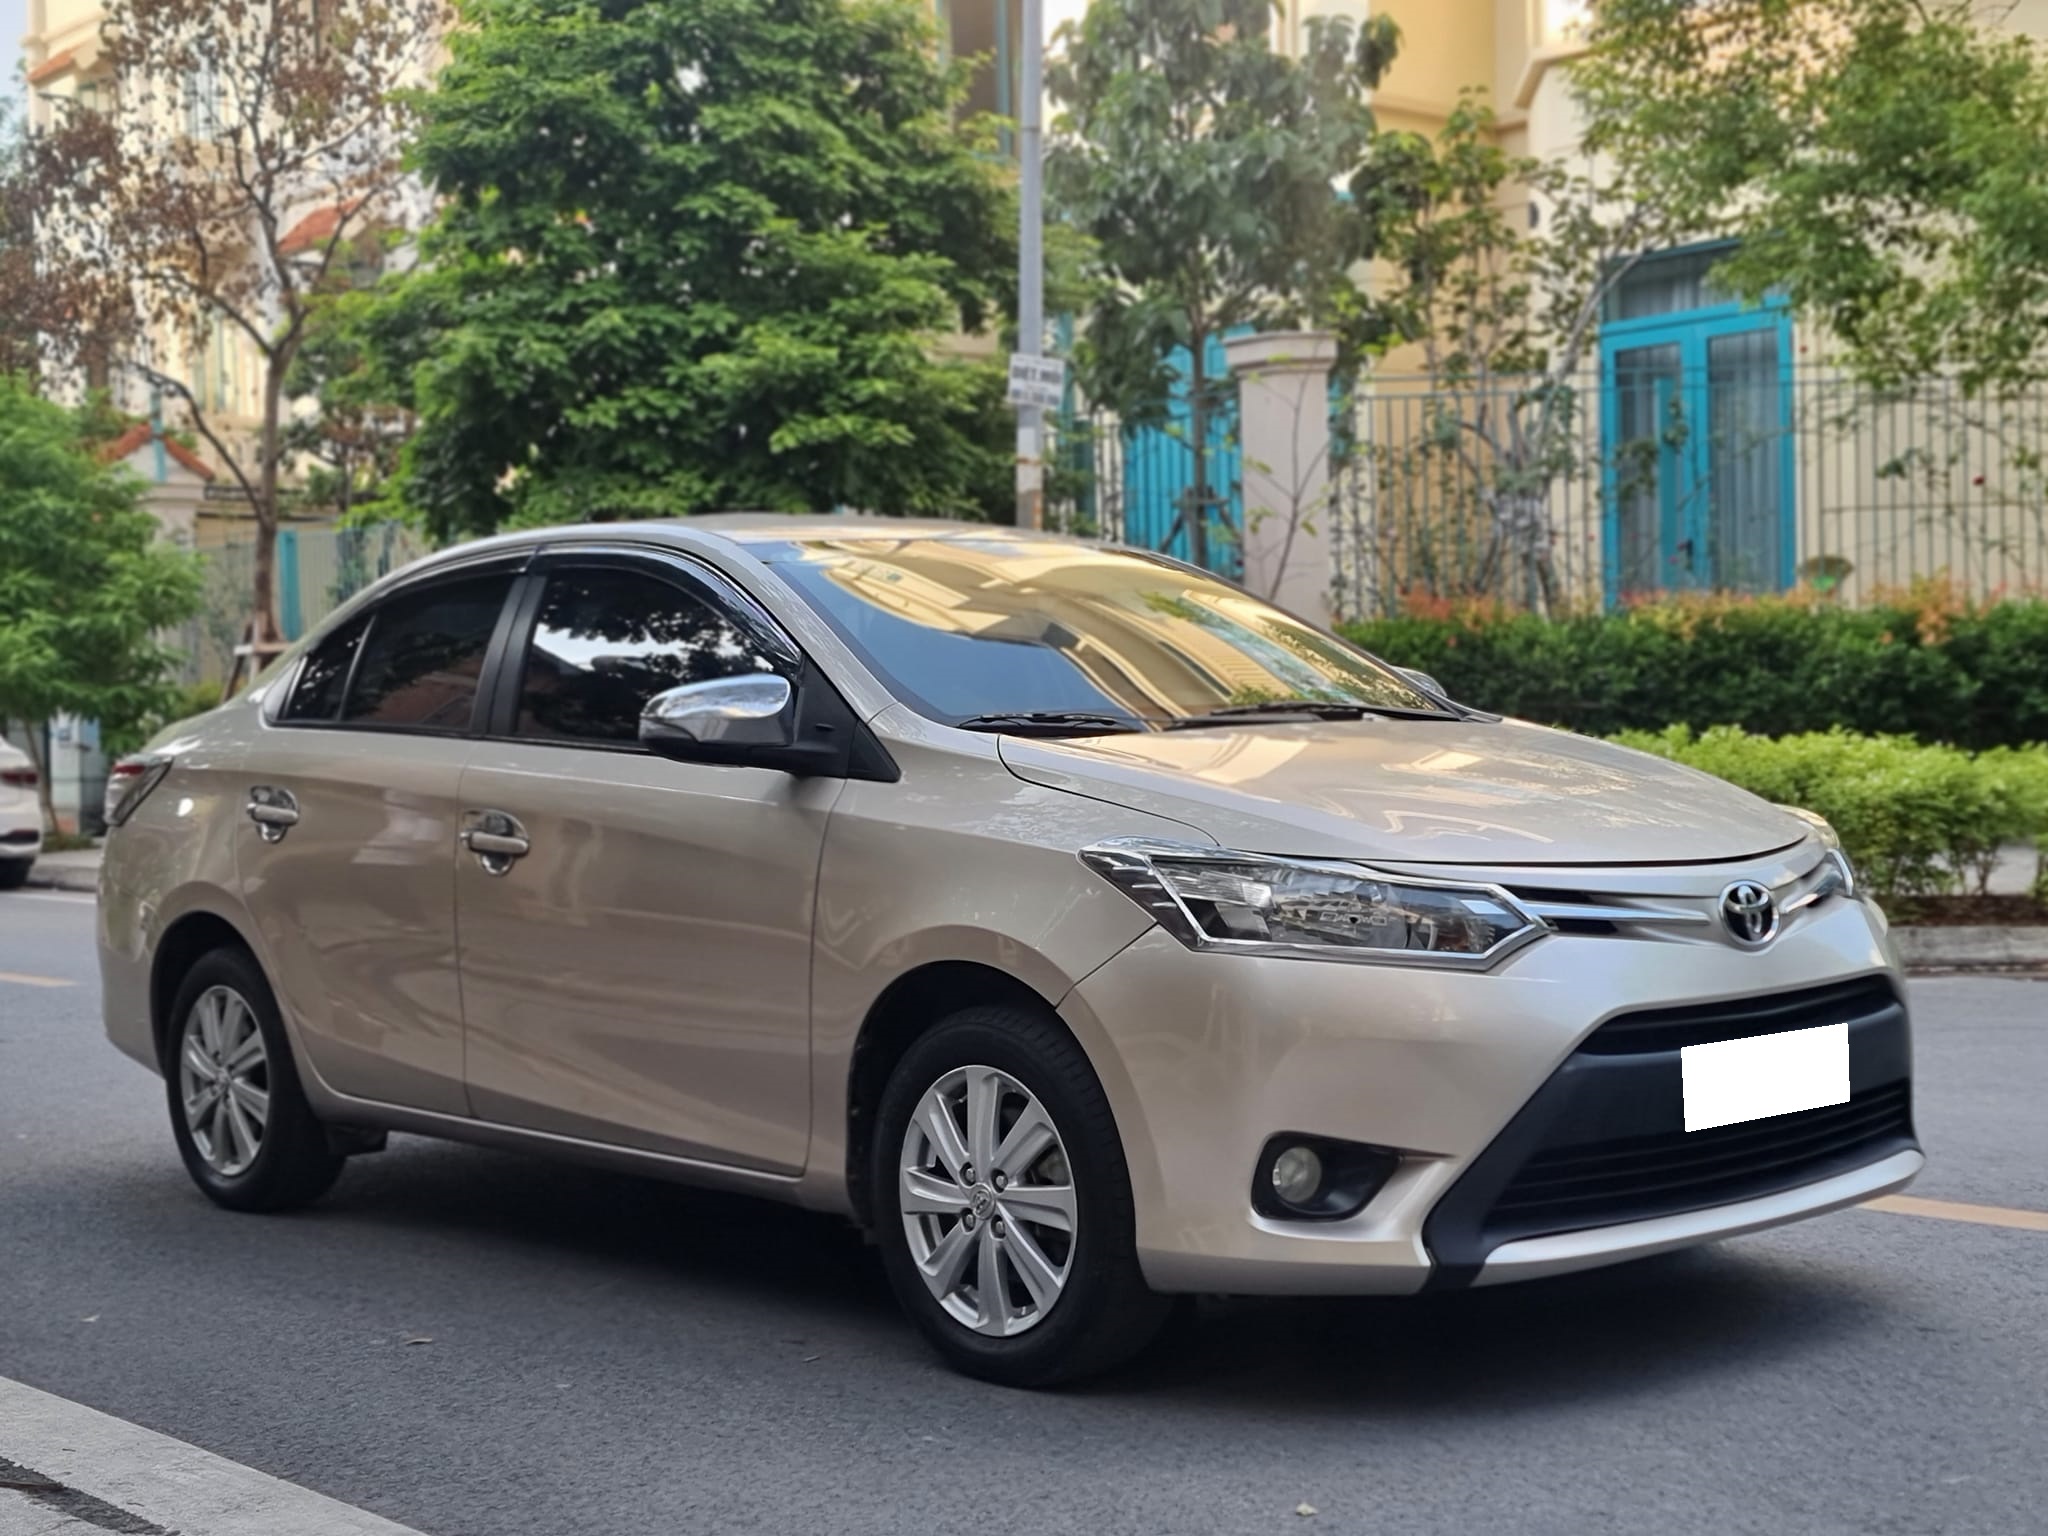 Cần bán Toyota Vios E MT 2018, số sàn, vàng cát .